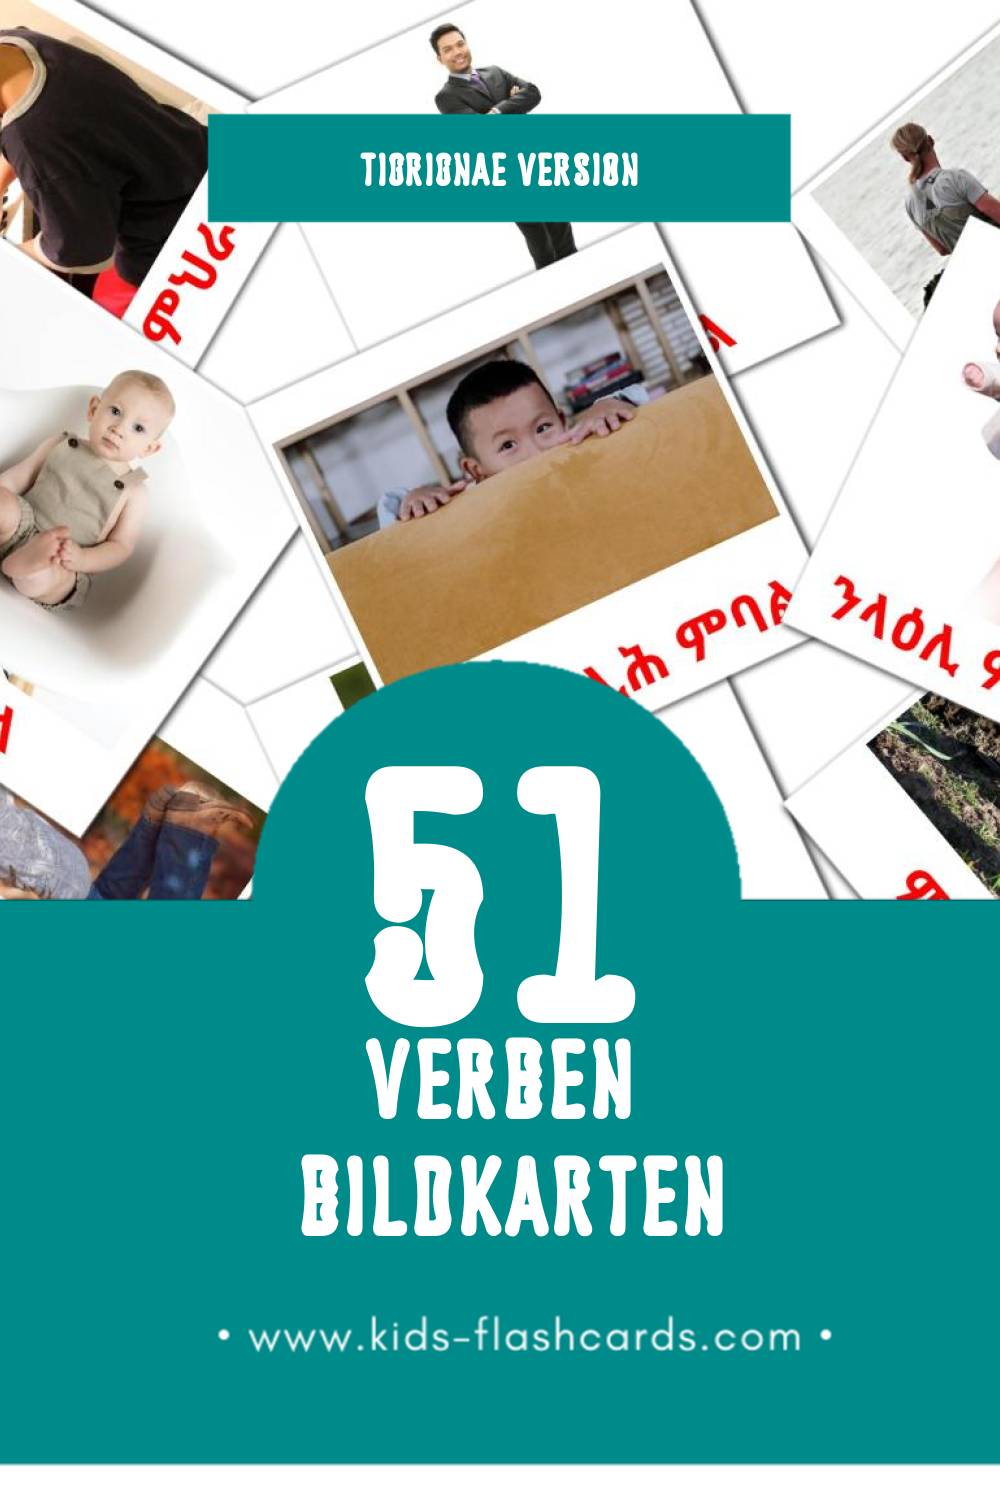 Visual ግሲ Flashcards für Kleinkinder (51 Karten in Tigrigna)